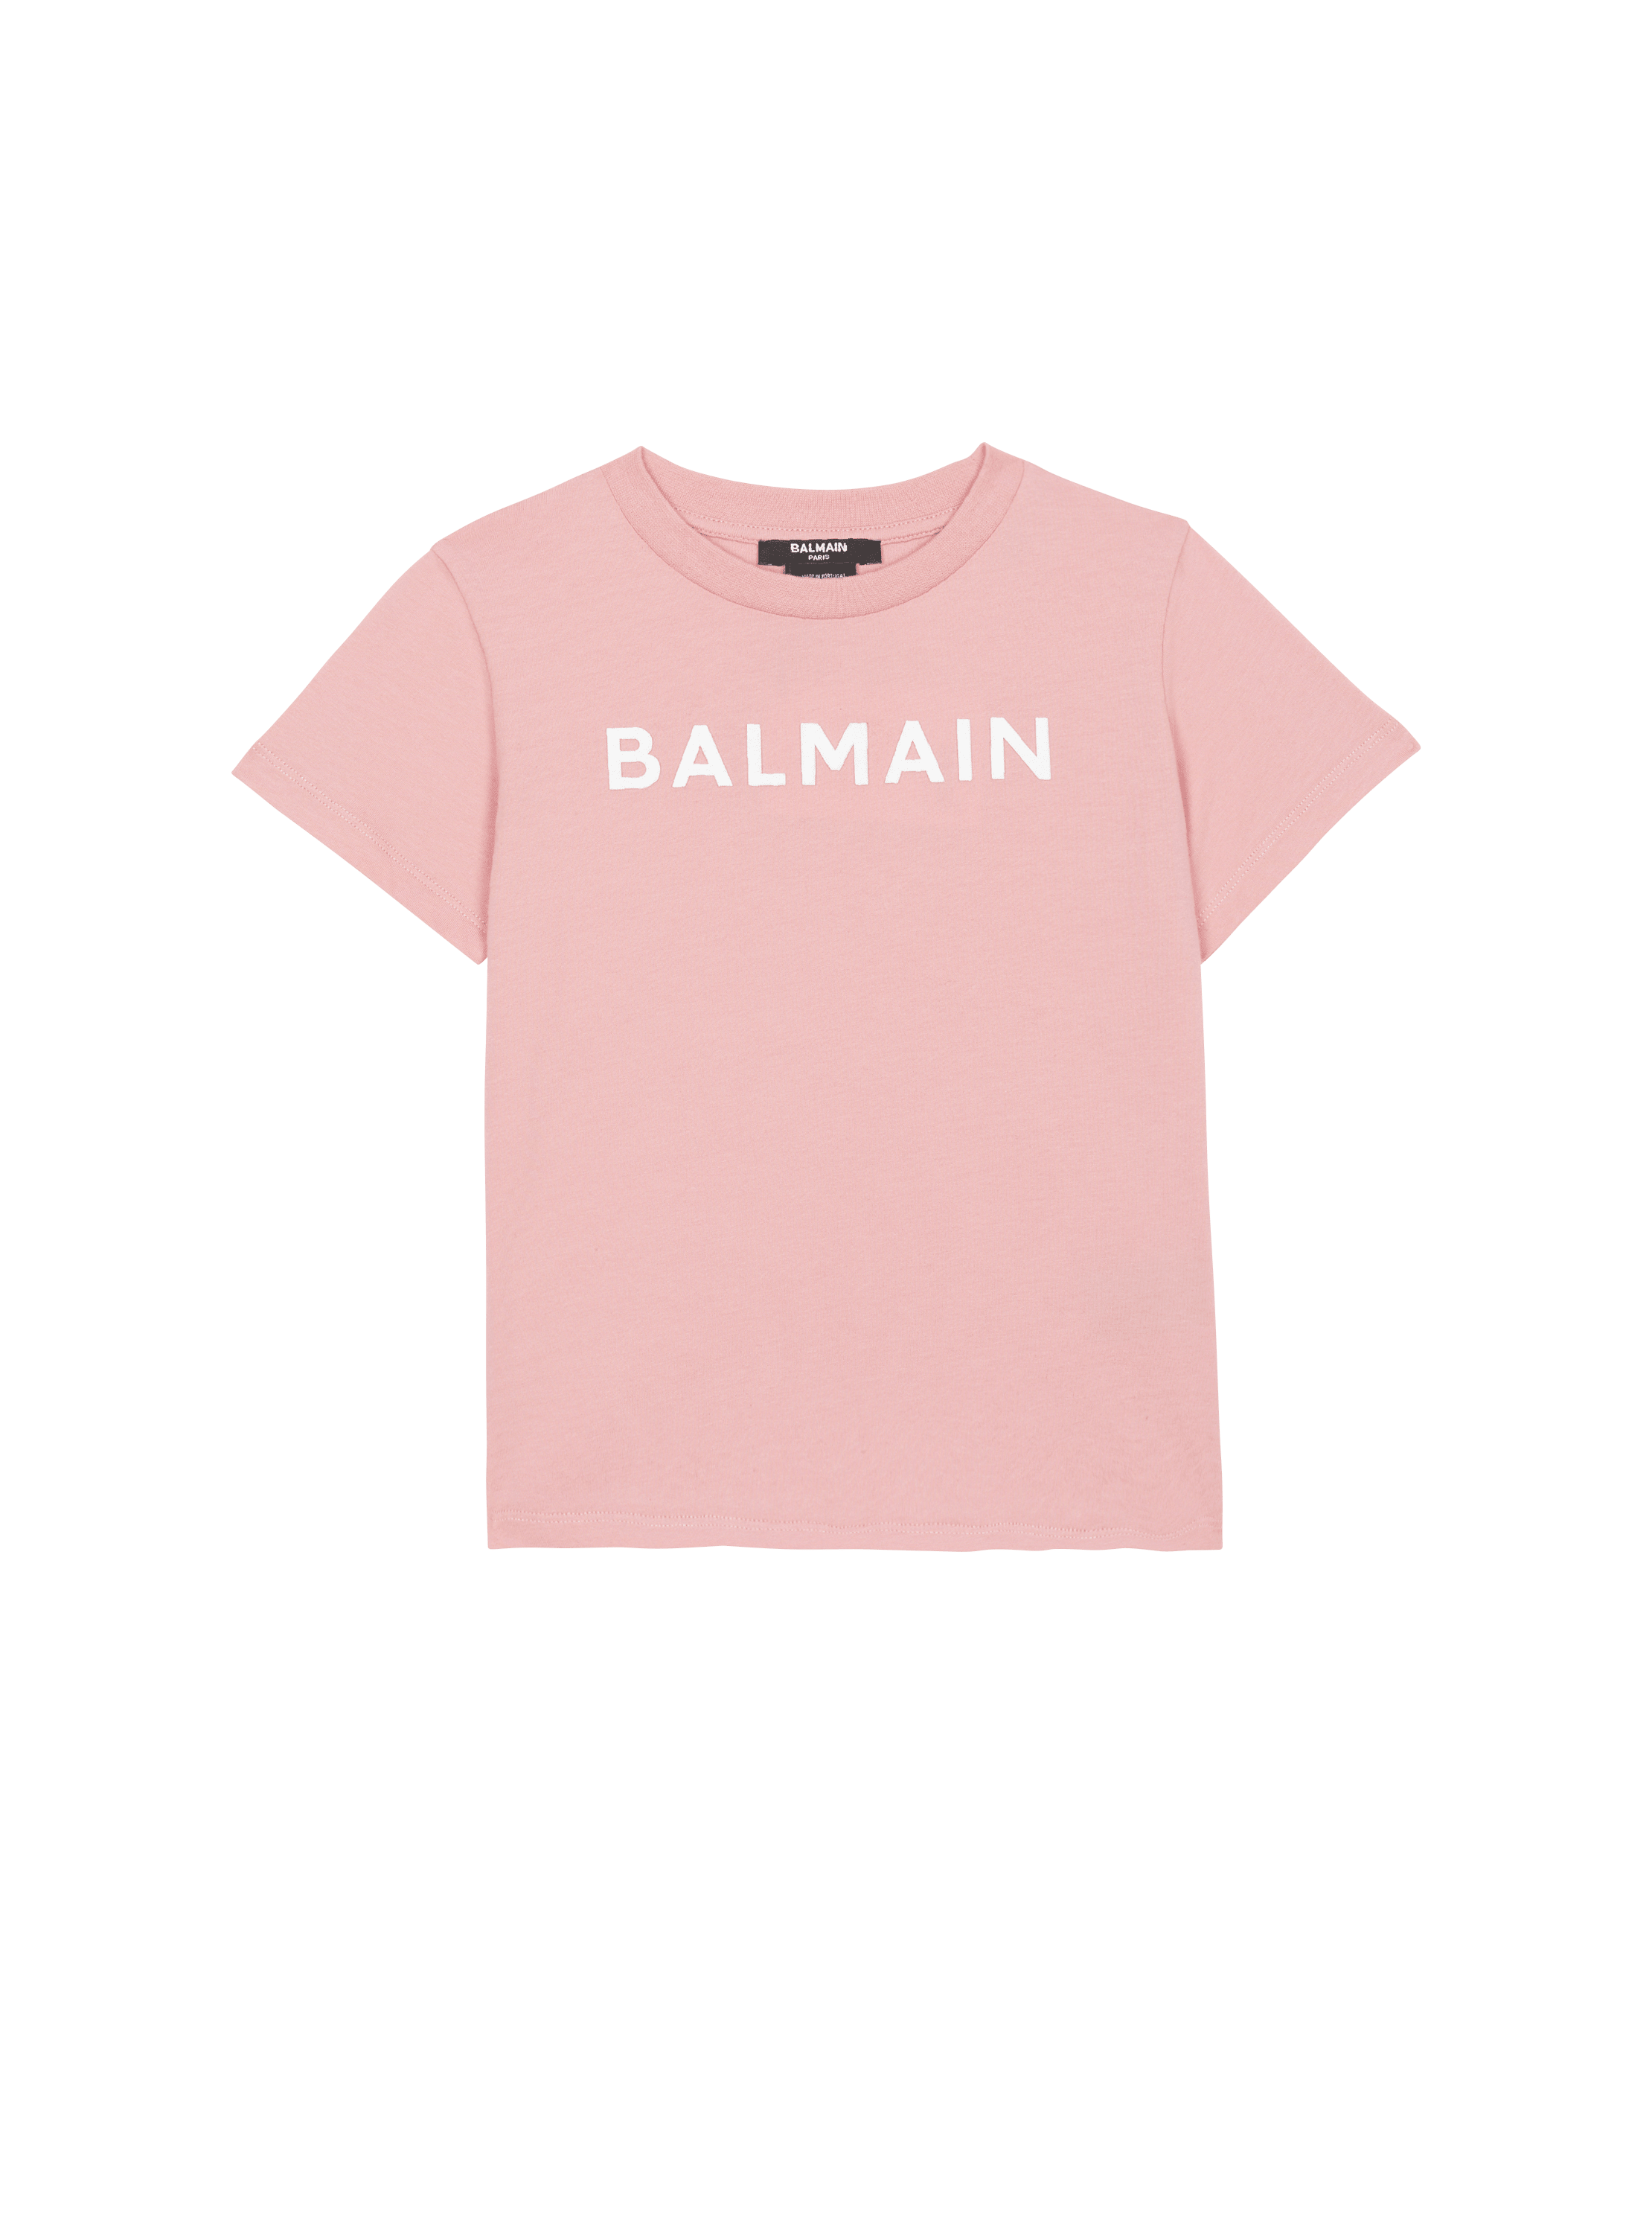 Camiseta con logotipo de Balmain